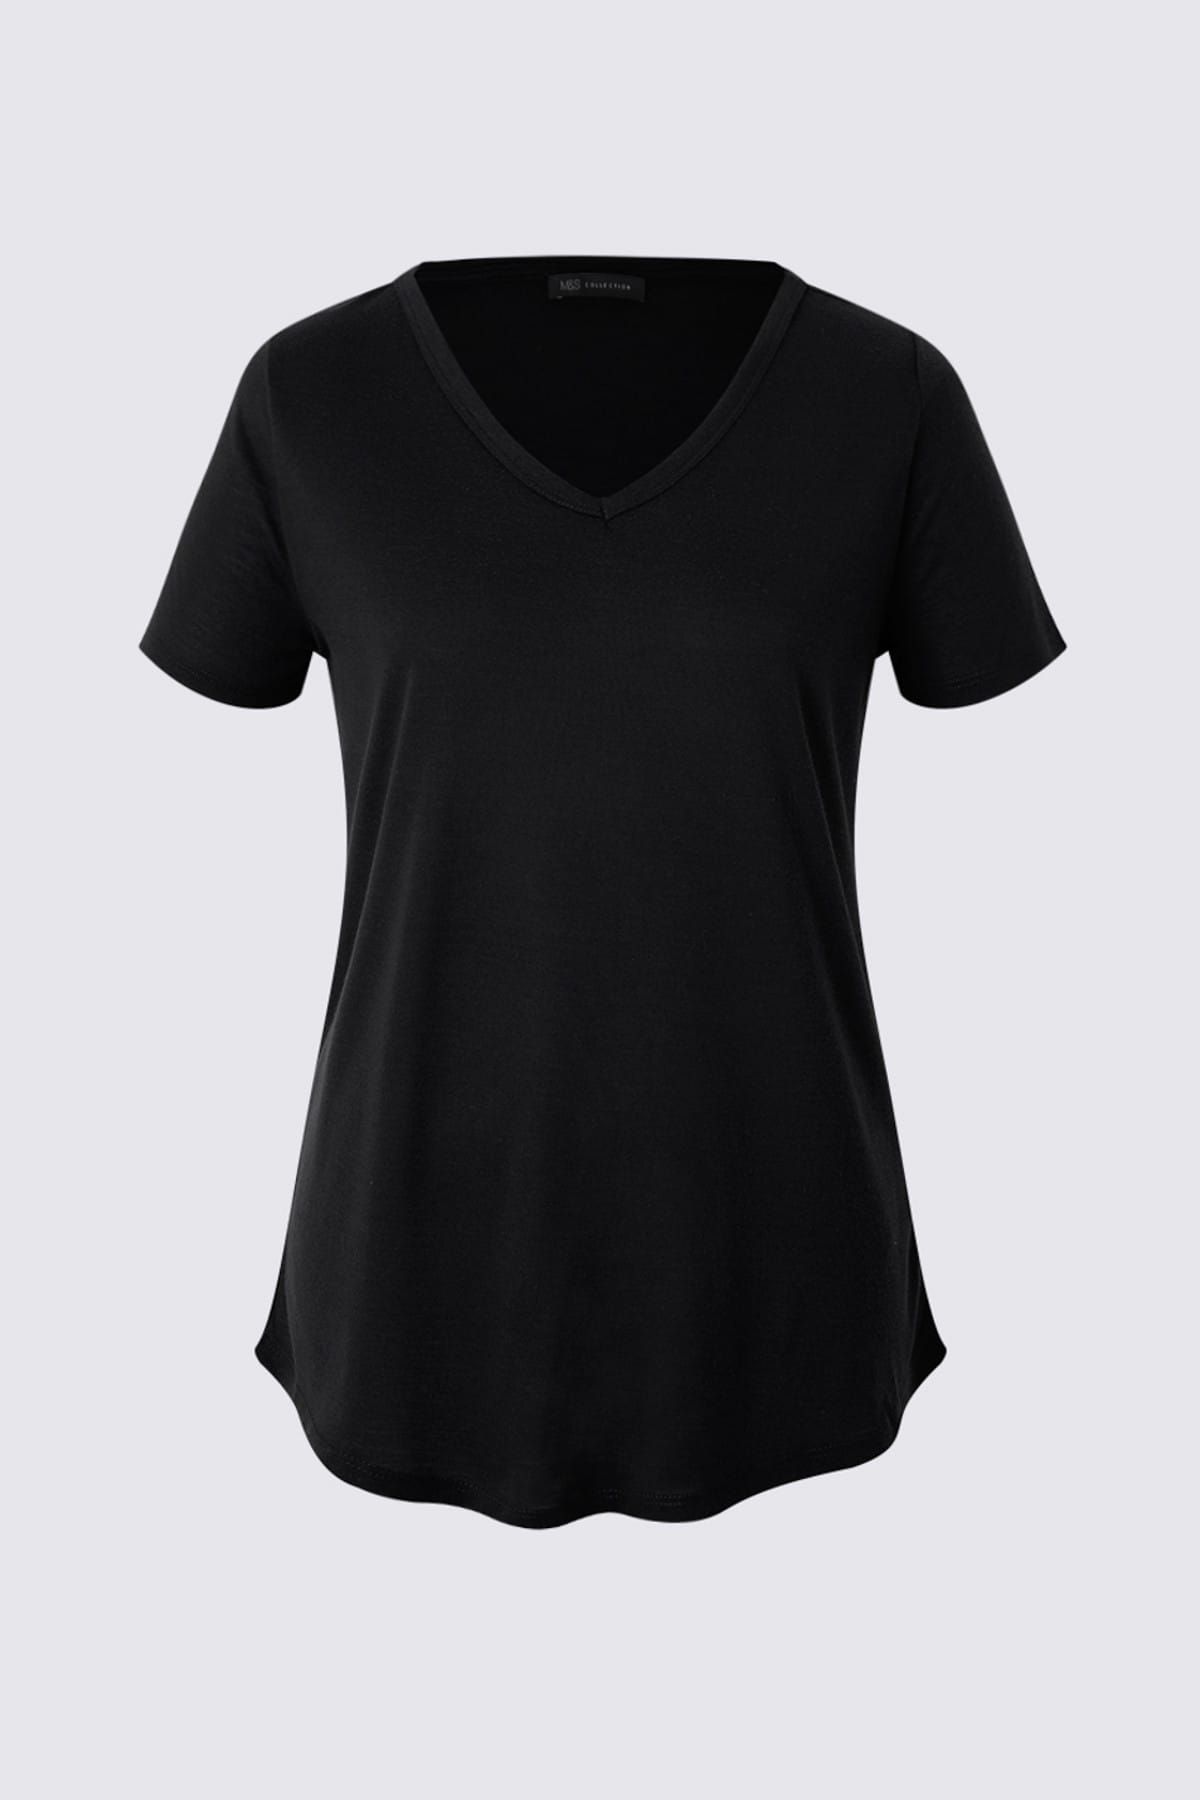 Marks & Spencer Kadın Siyah Kısa Kollu V Yaka T-shirt T41001270H